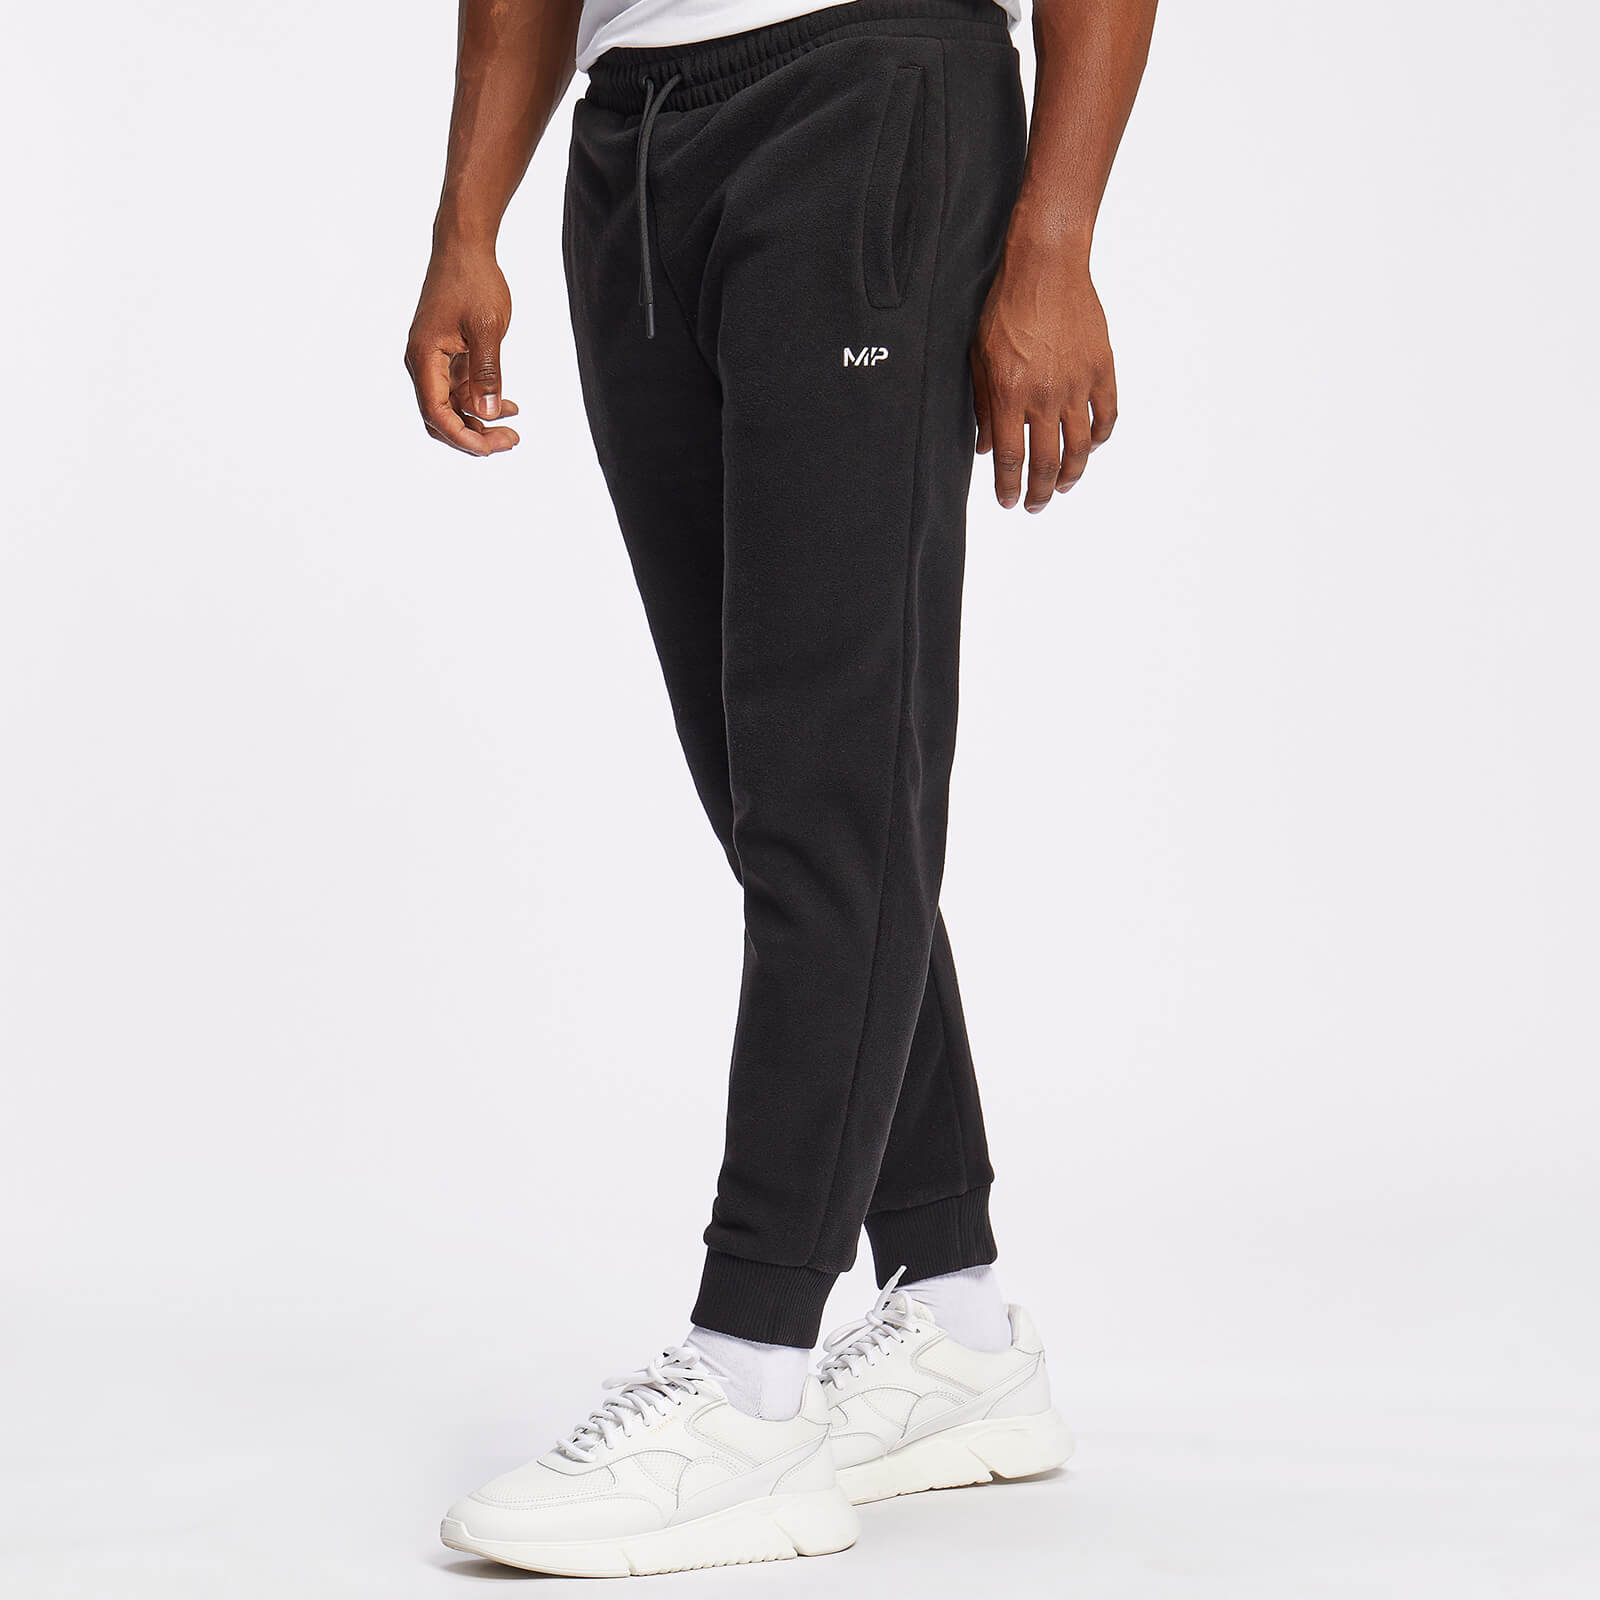 Pantalón deportivo polar Essentials para hombre - Negro - XXS